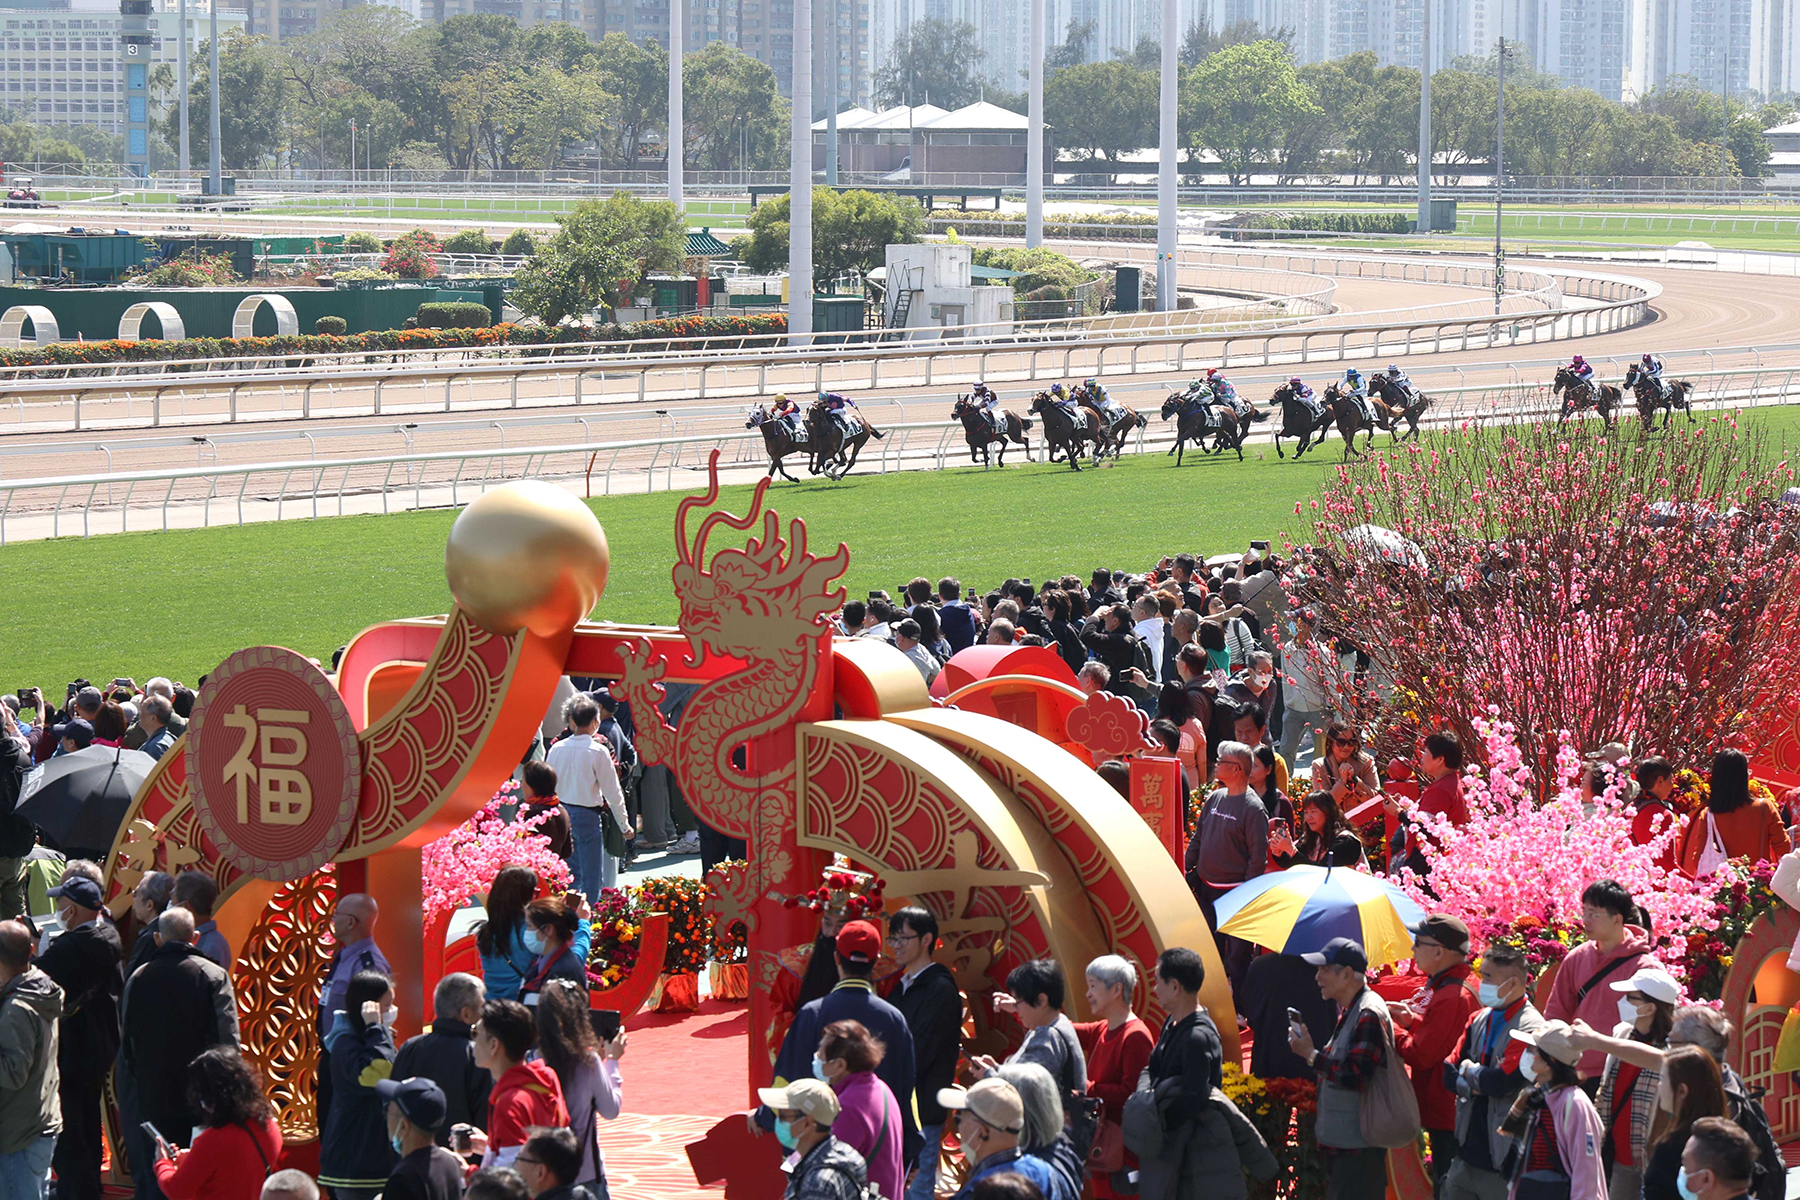 農曆新年賽馬日吸引一眾市民入場觀看賽馬歡度新歲。